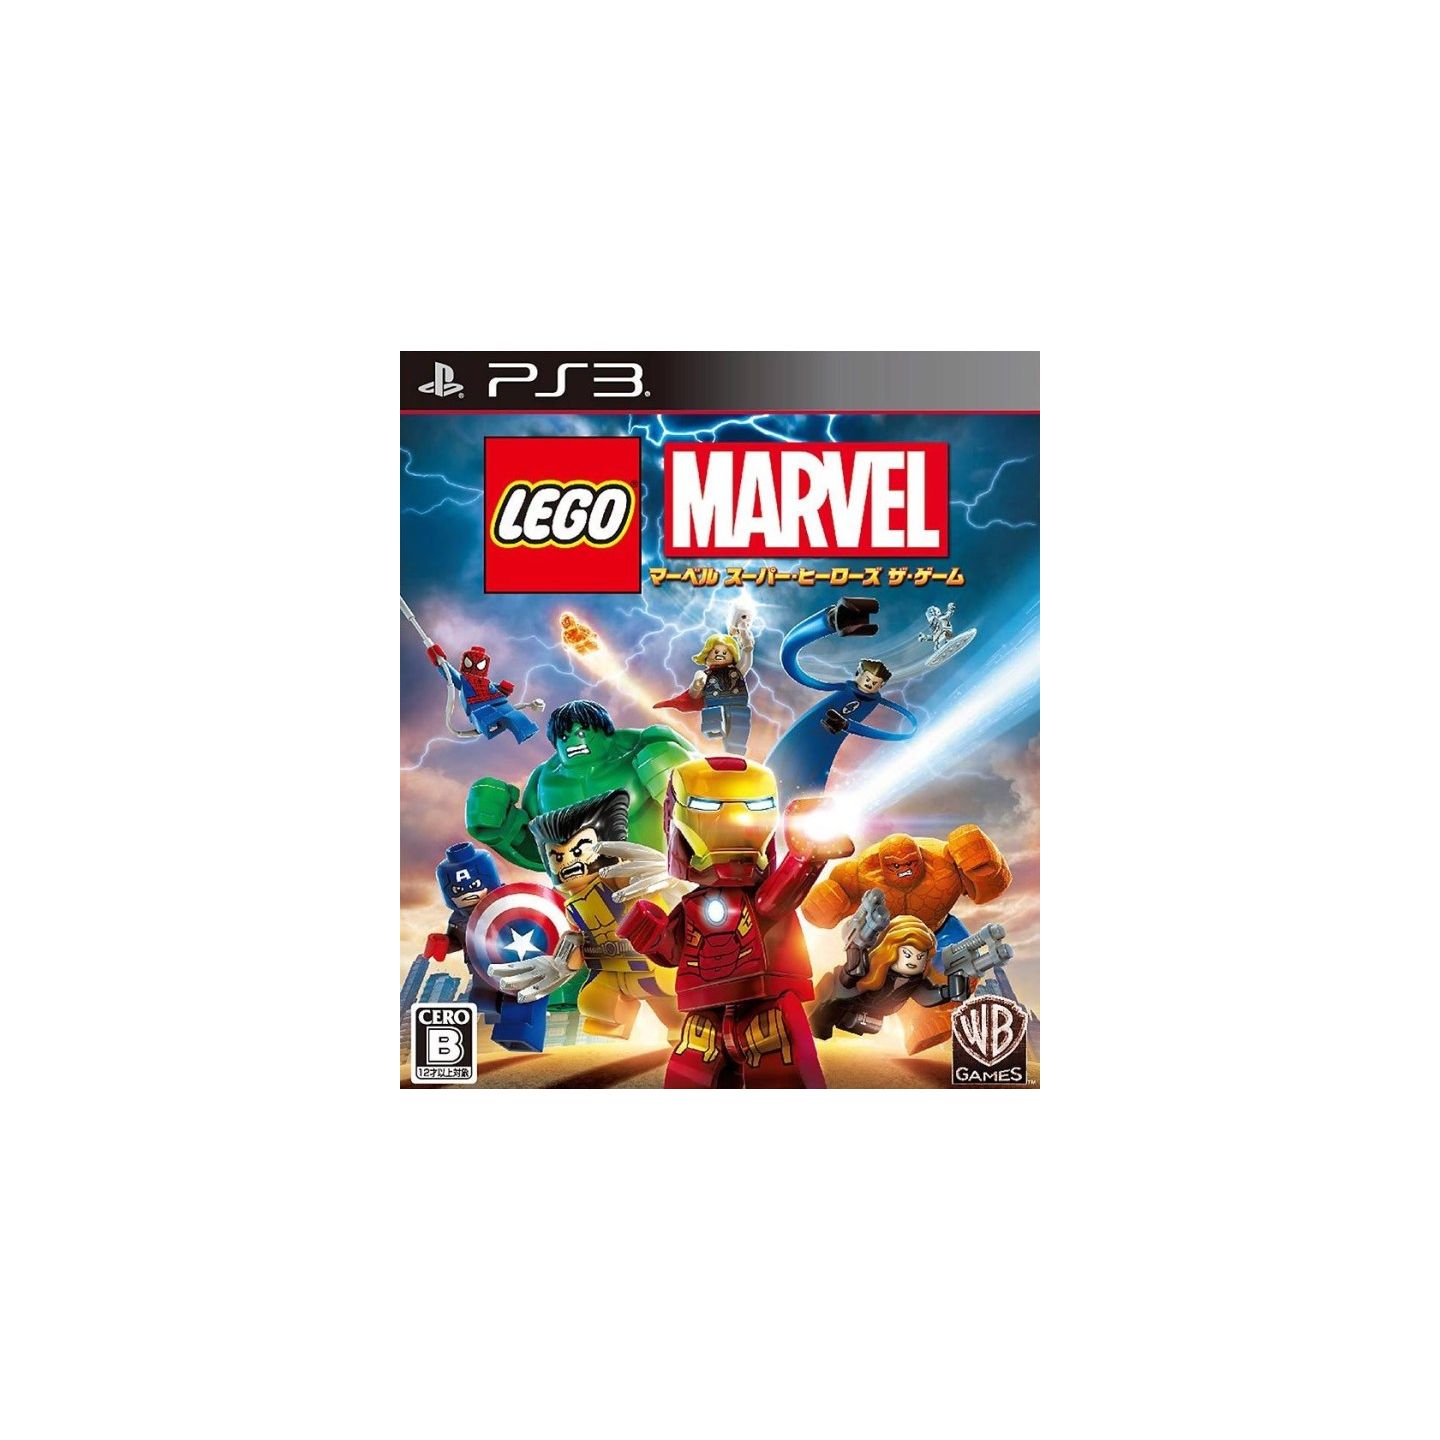 Lego Marvel Super Heroes + Lego Batman 3 Digital PS3 PSN